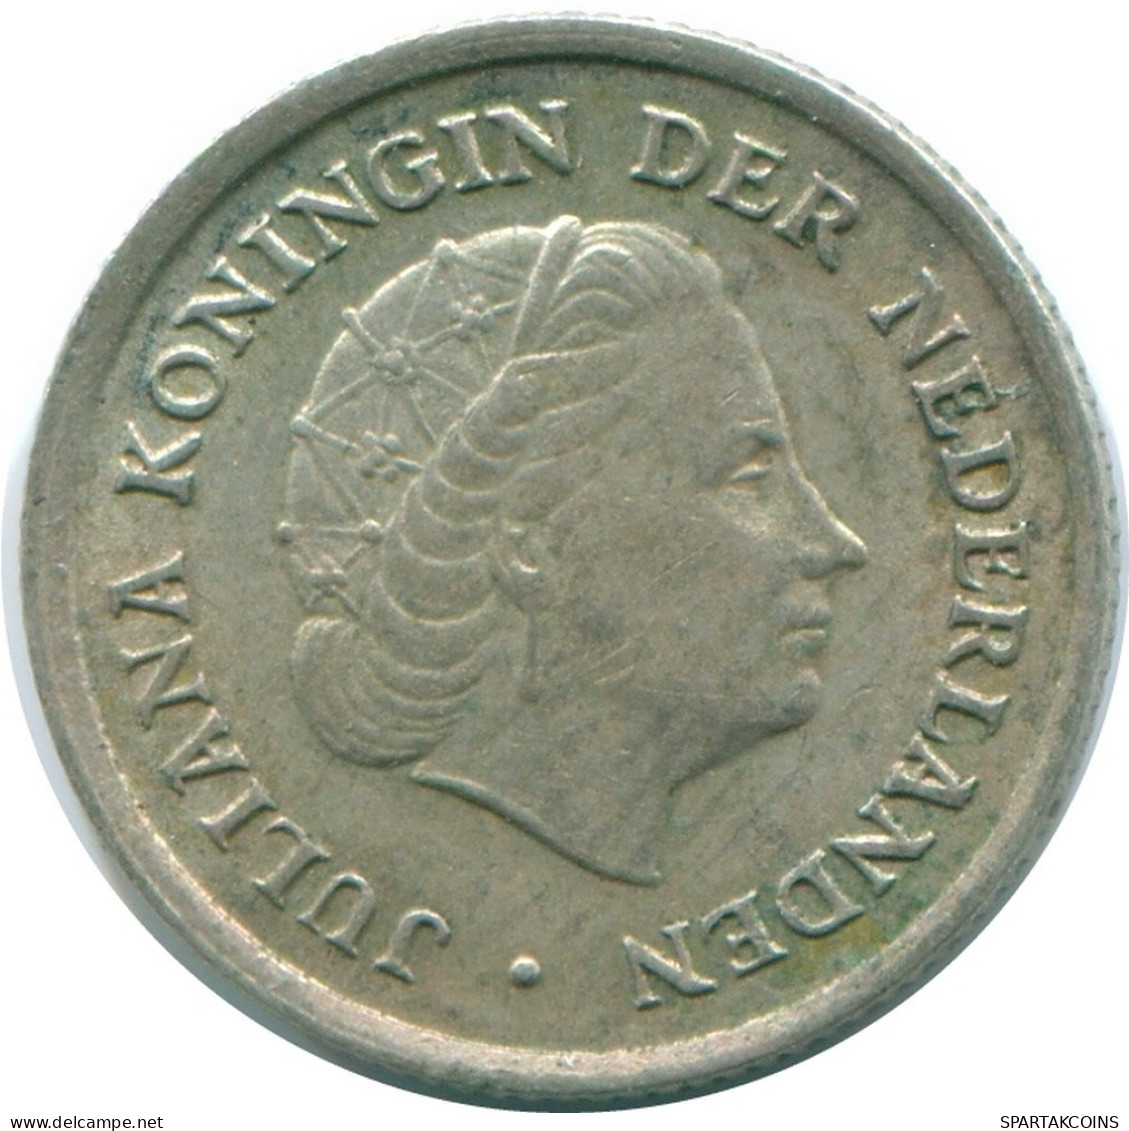 1/10 GULDEN 1970 NIEDERLÄNDISCHE ANTILLEN SILBER Koloniale Münze #NL13060.3.D.A - Niederländische Antillen